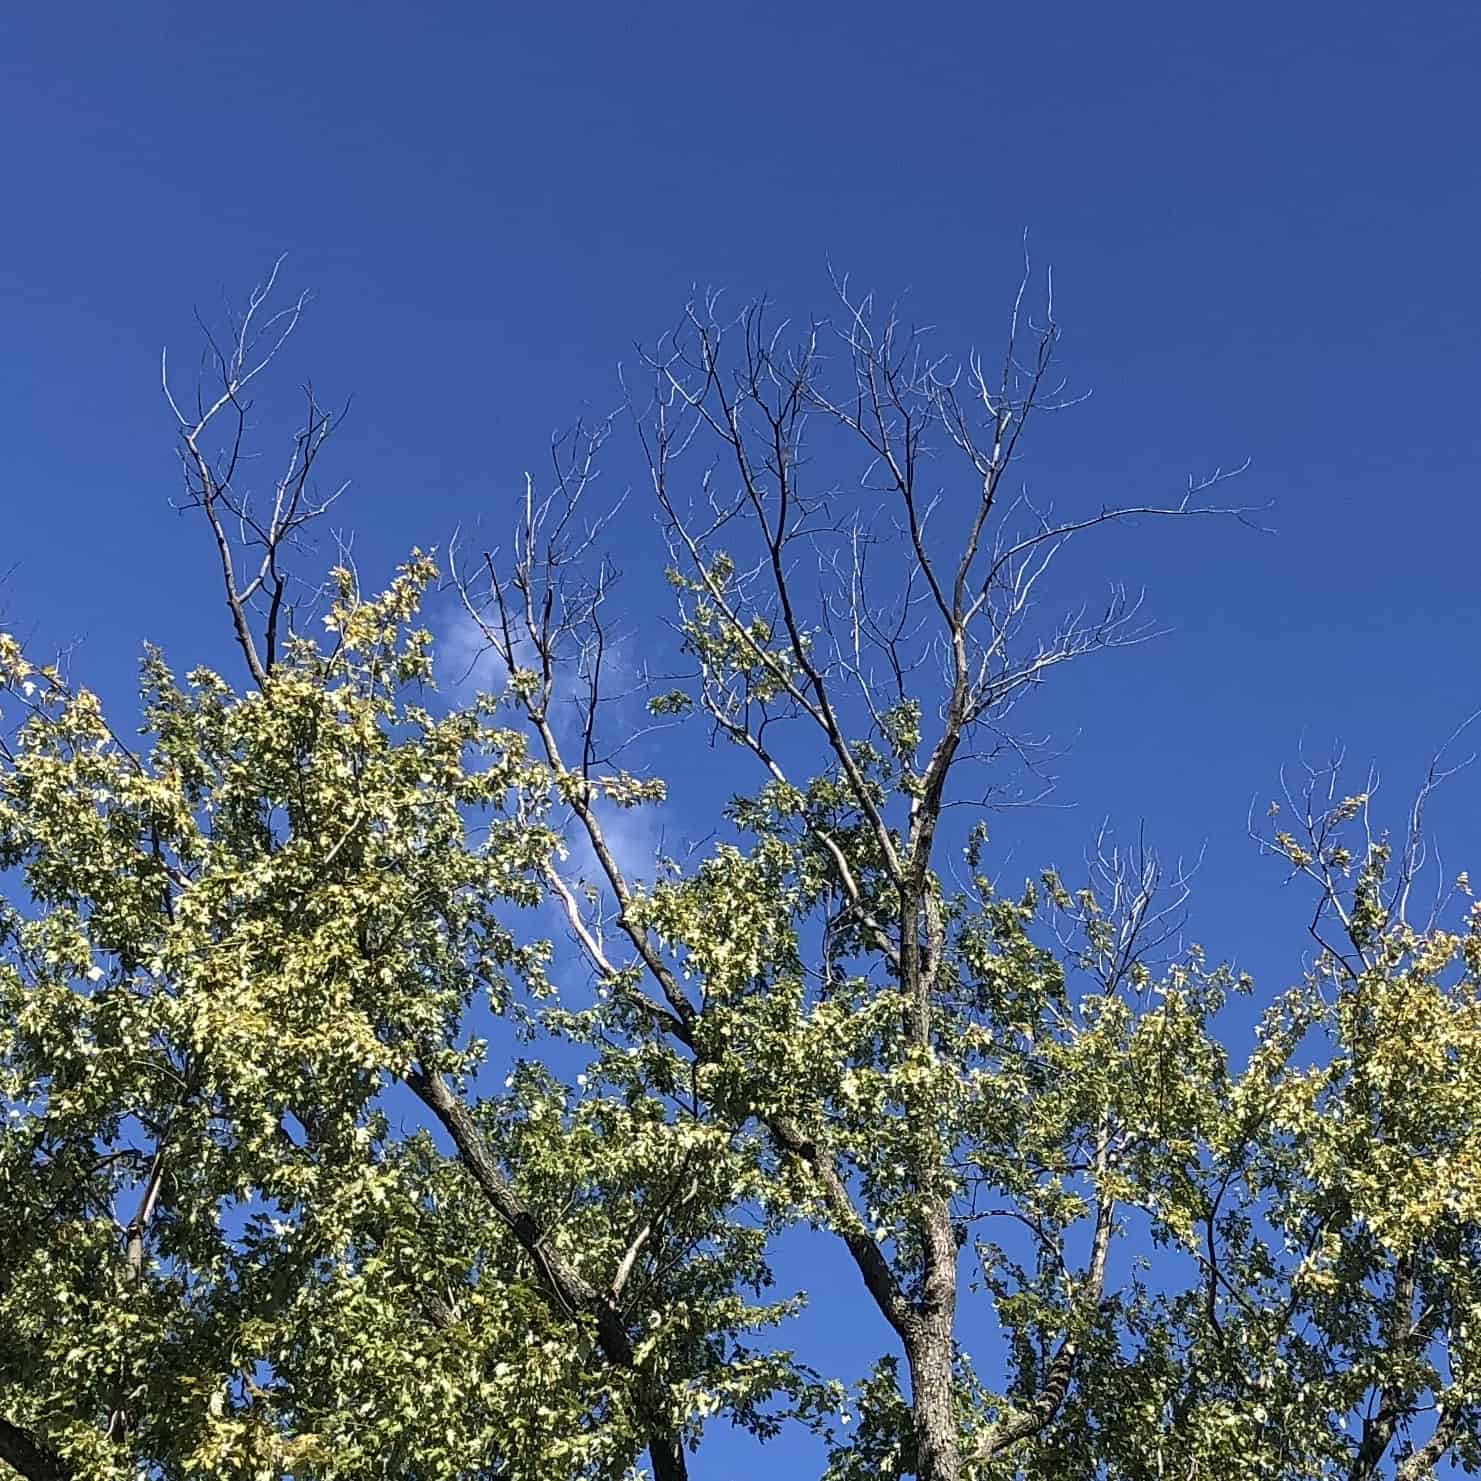 Deadwood in a tree in Herndon, VA